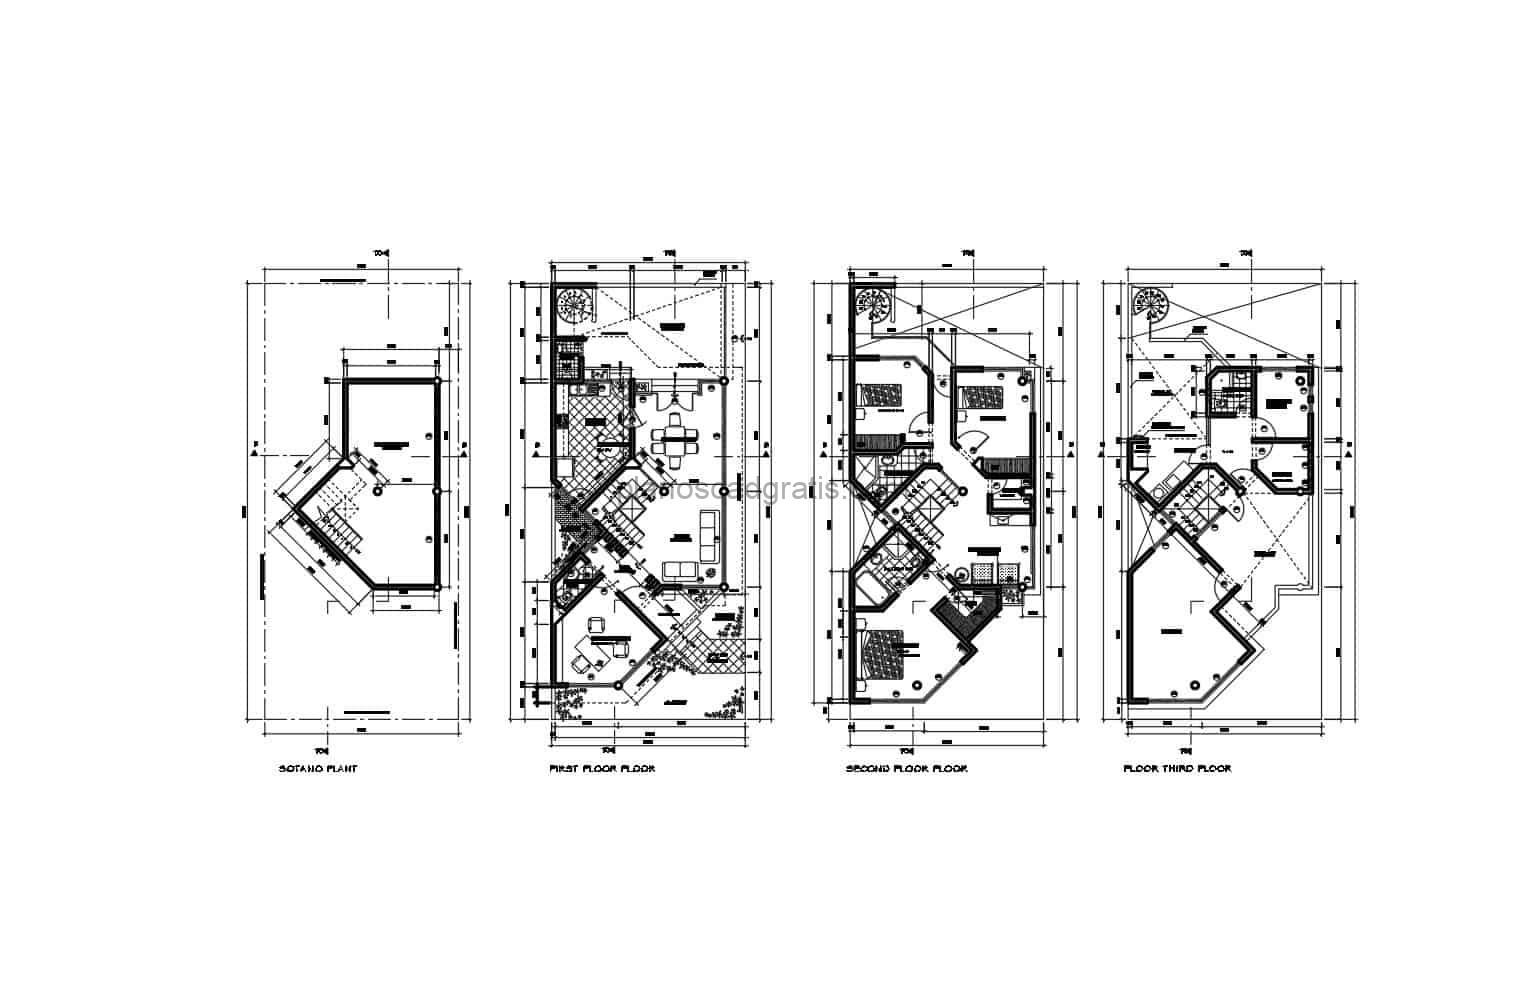 plano DWG de AutoCAD de residencia de tres niveles con estilo moderno y sótano, planta arquitectónica y dimensionada, planos para descarga gratis en formato DWG